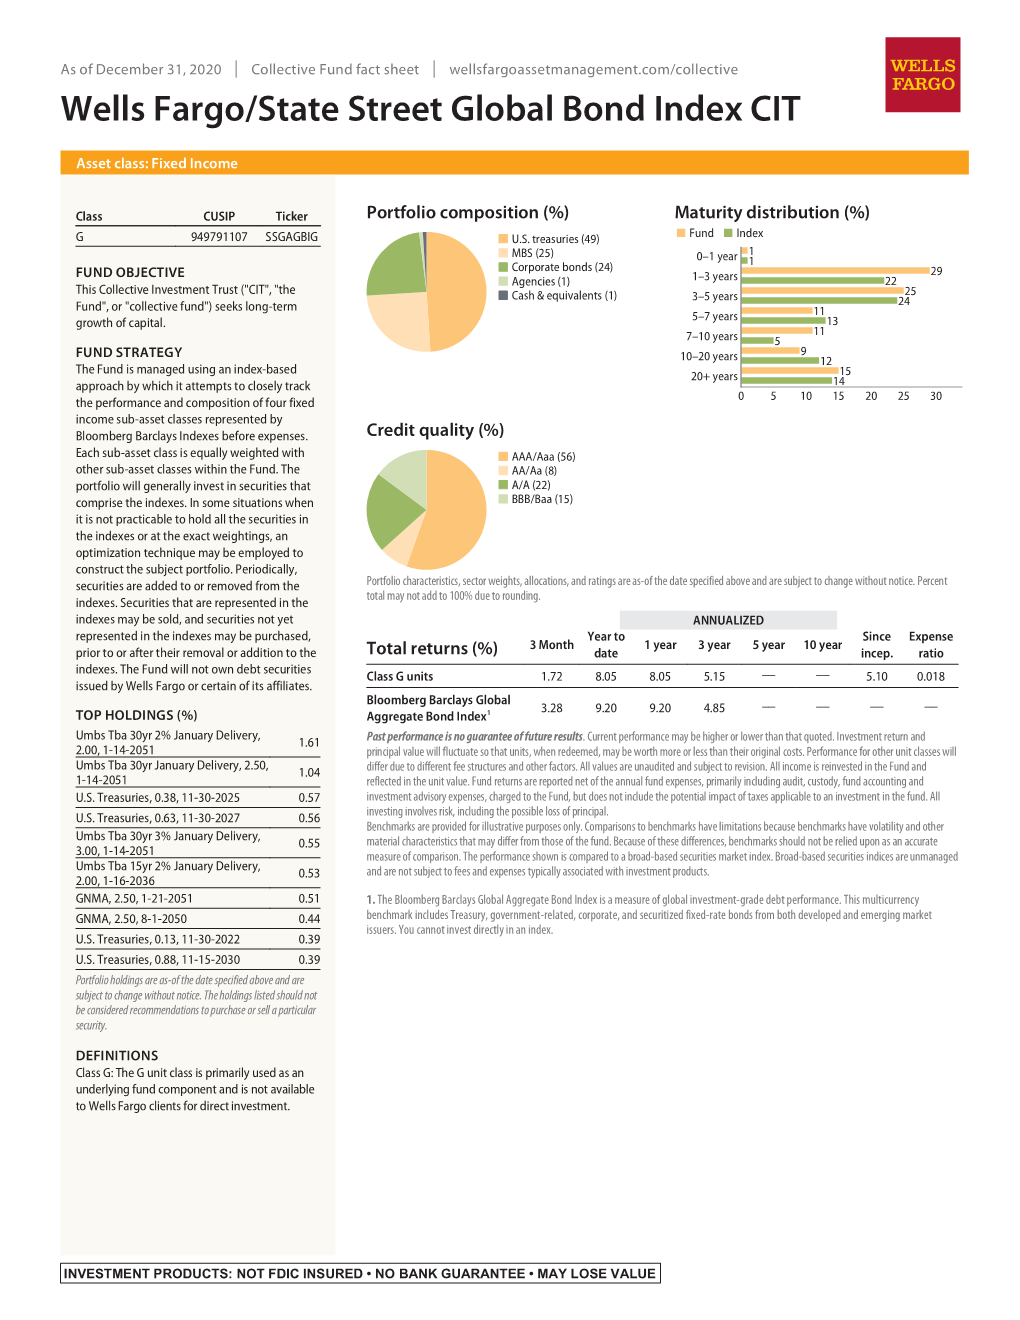 Wells Fargo/State Street Global Bond Index CIT Fact Sheet